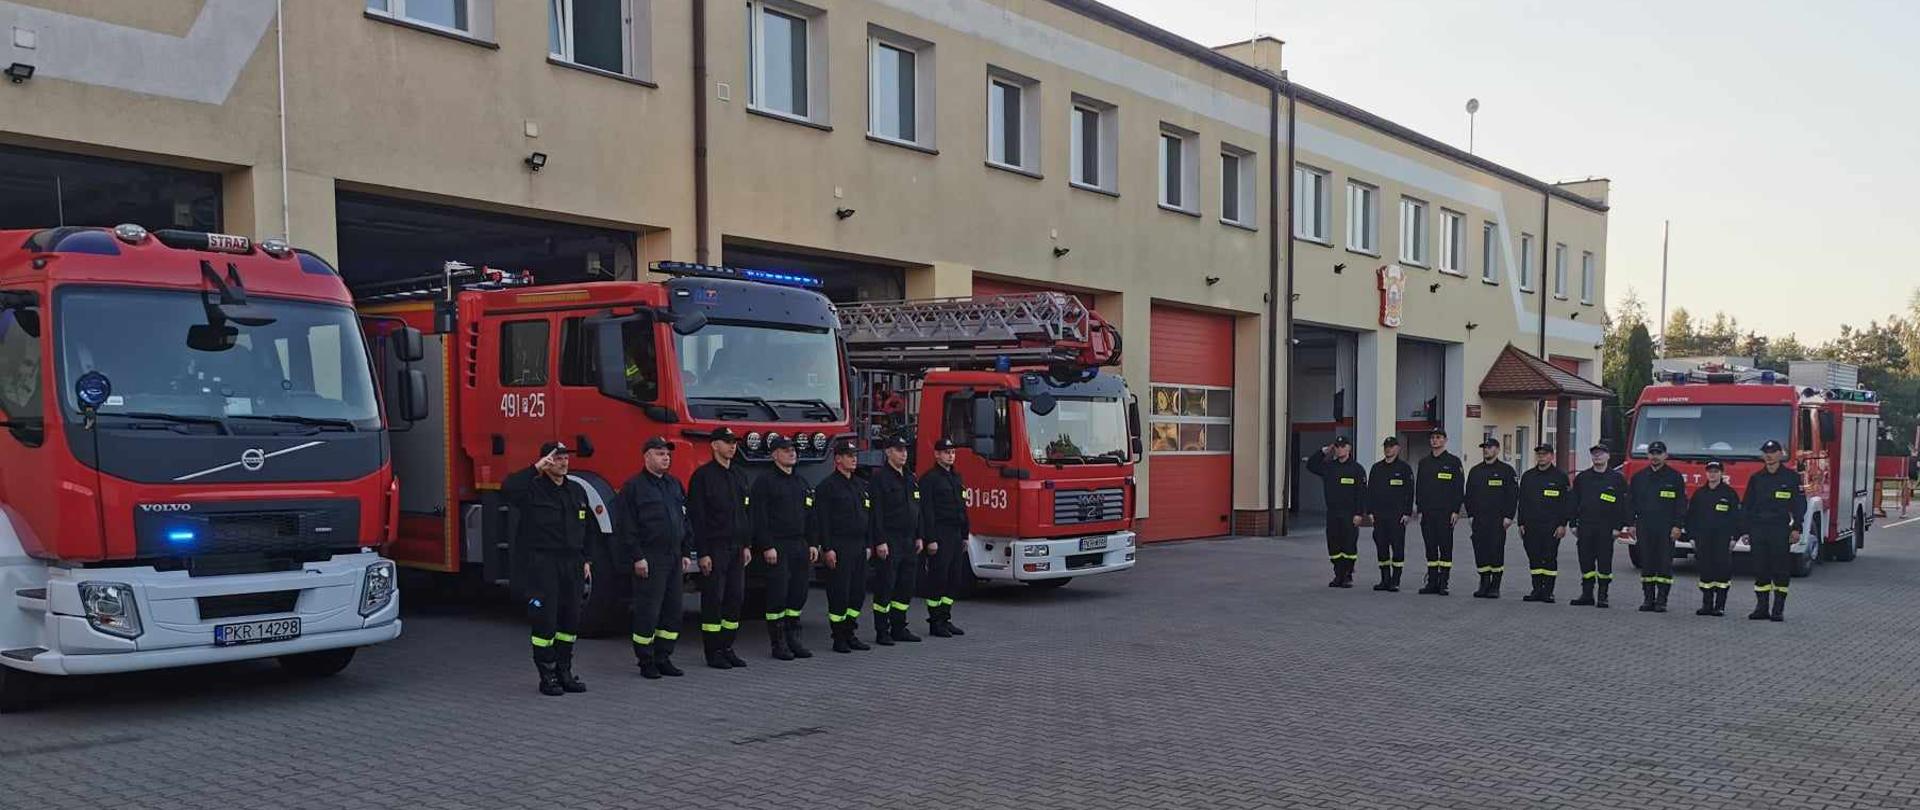 Zdjęcie przedstawia stojących strażaków w umundurowaniu koszarowym na tle samochodów pożarniczych koloru czerwonego. Strażacy oddają hołd zmarłemu tragicznie druhowi.